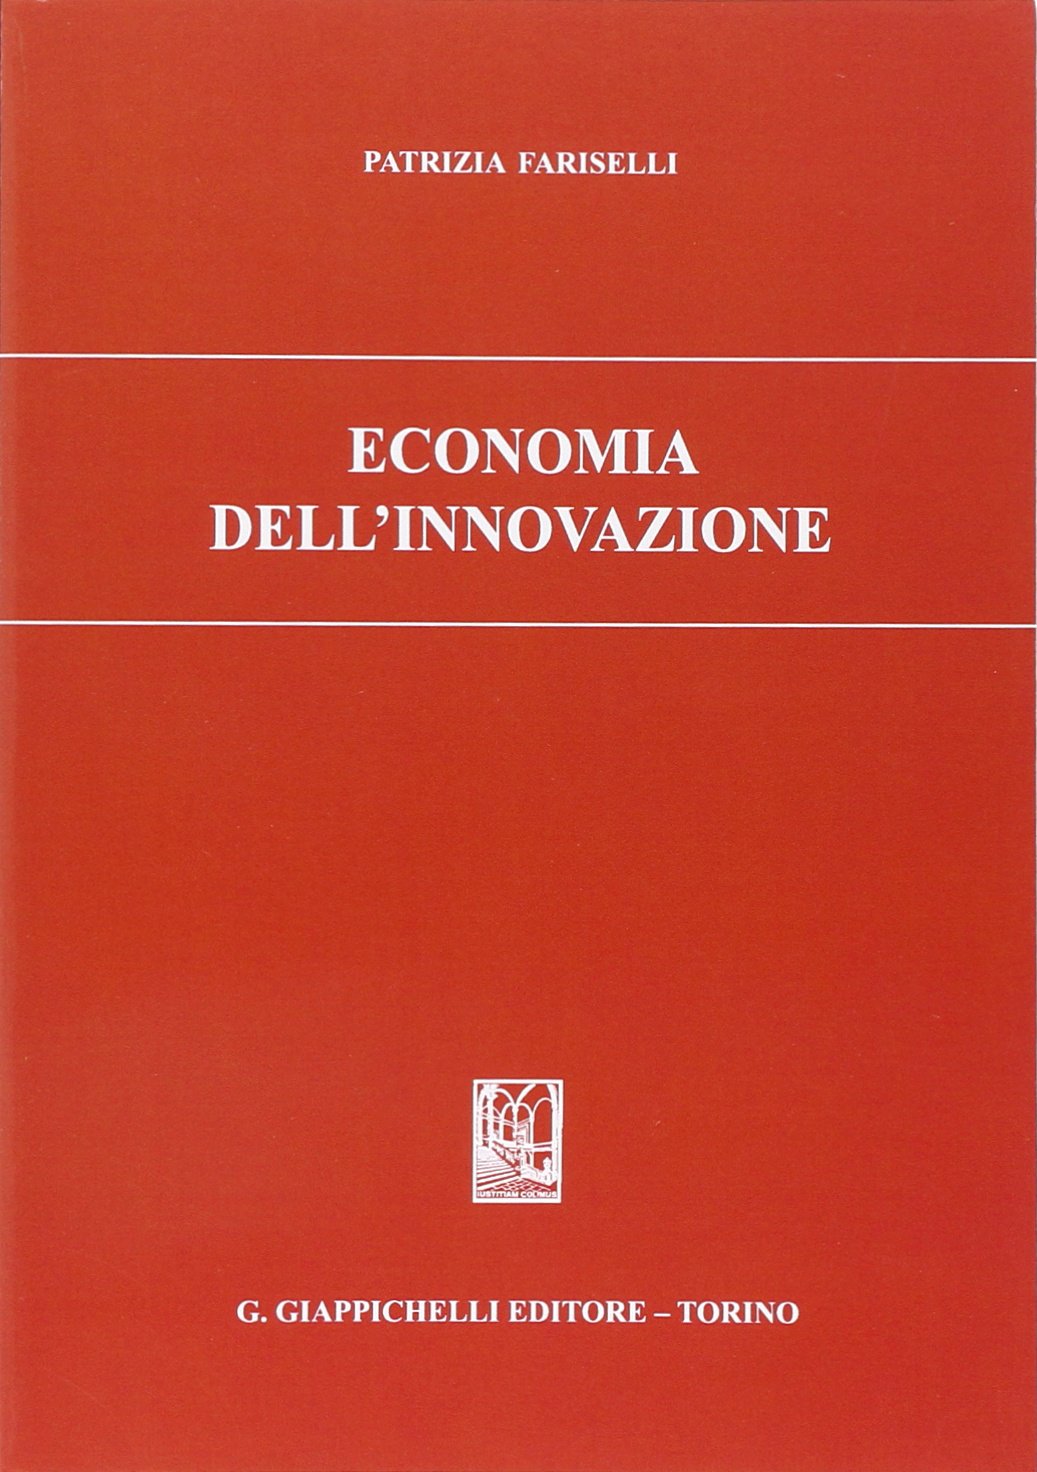 Libri Patrizia Fariselli - Economia Dell'Innovazione NUOVO SIGILLATO, EDIZIONE DEL 01/06/2014 SUBITO DISPONIBILE